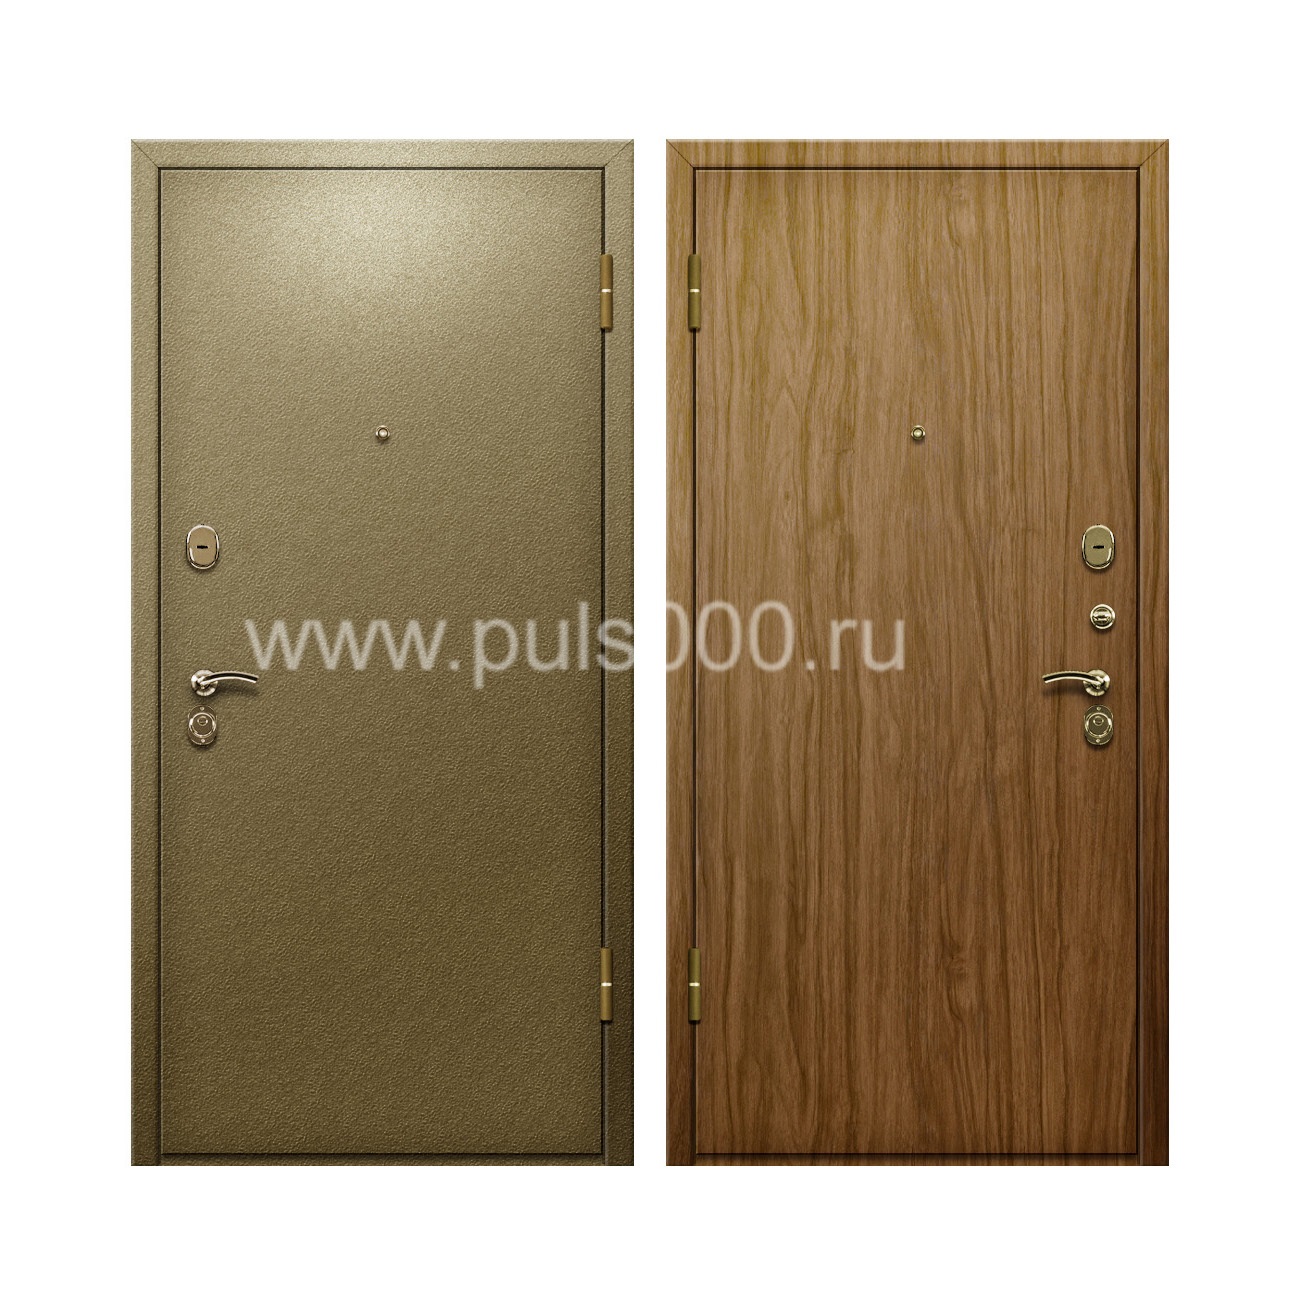 Входная дверь с порошковым покрытием и ламинатом PR-64, цена 20 000  руб.